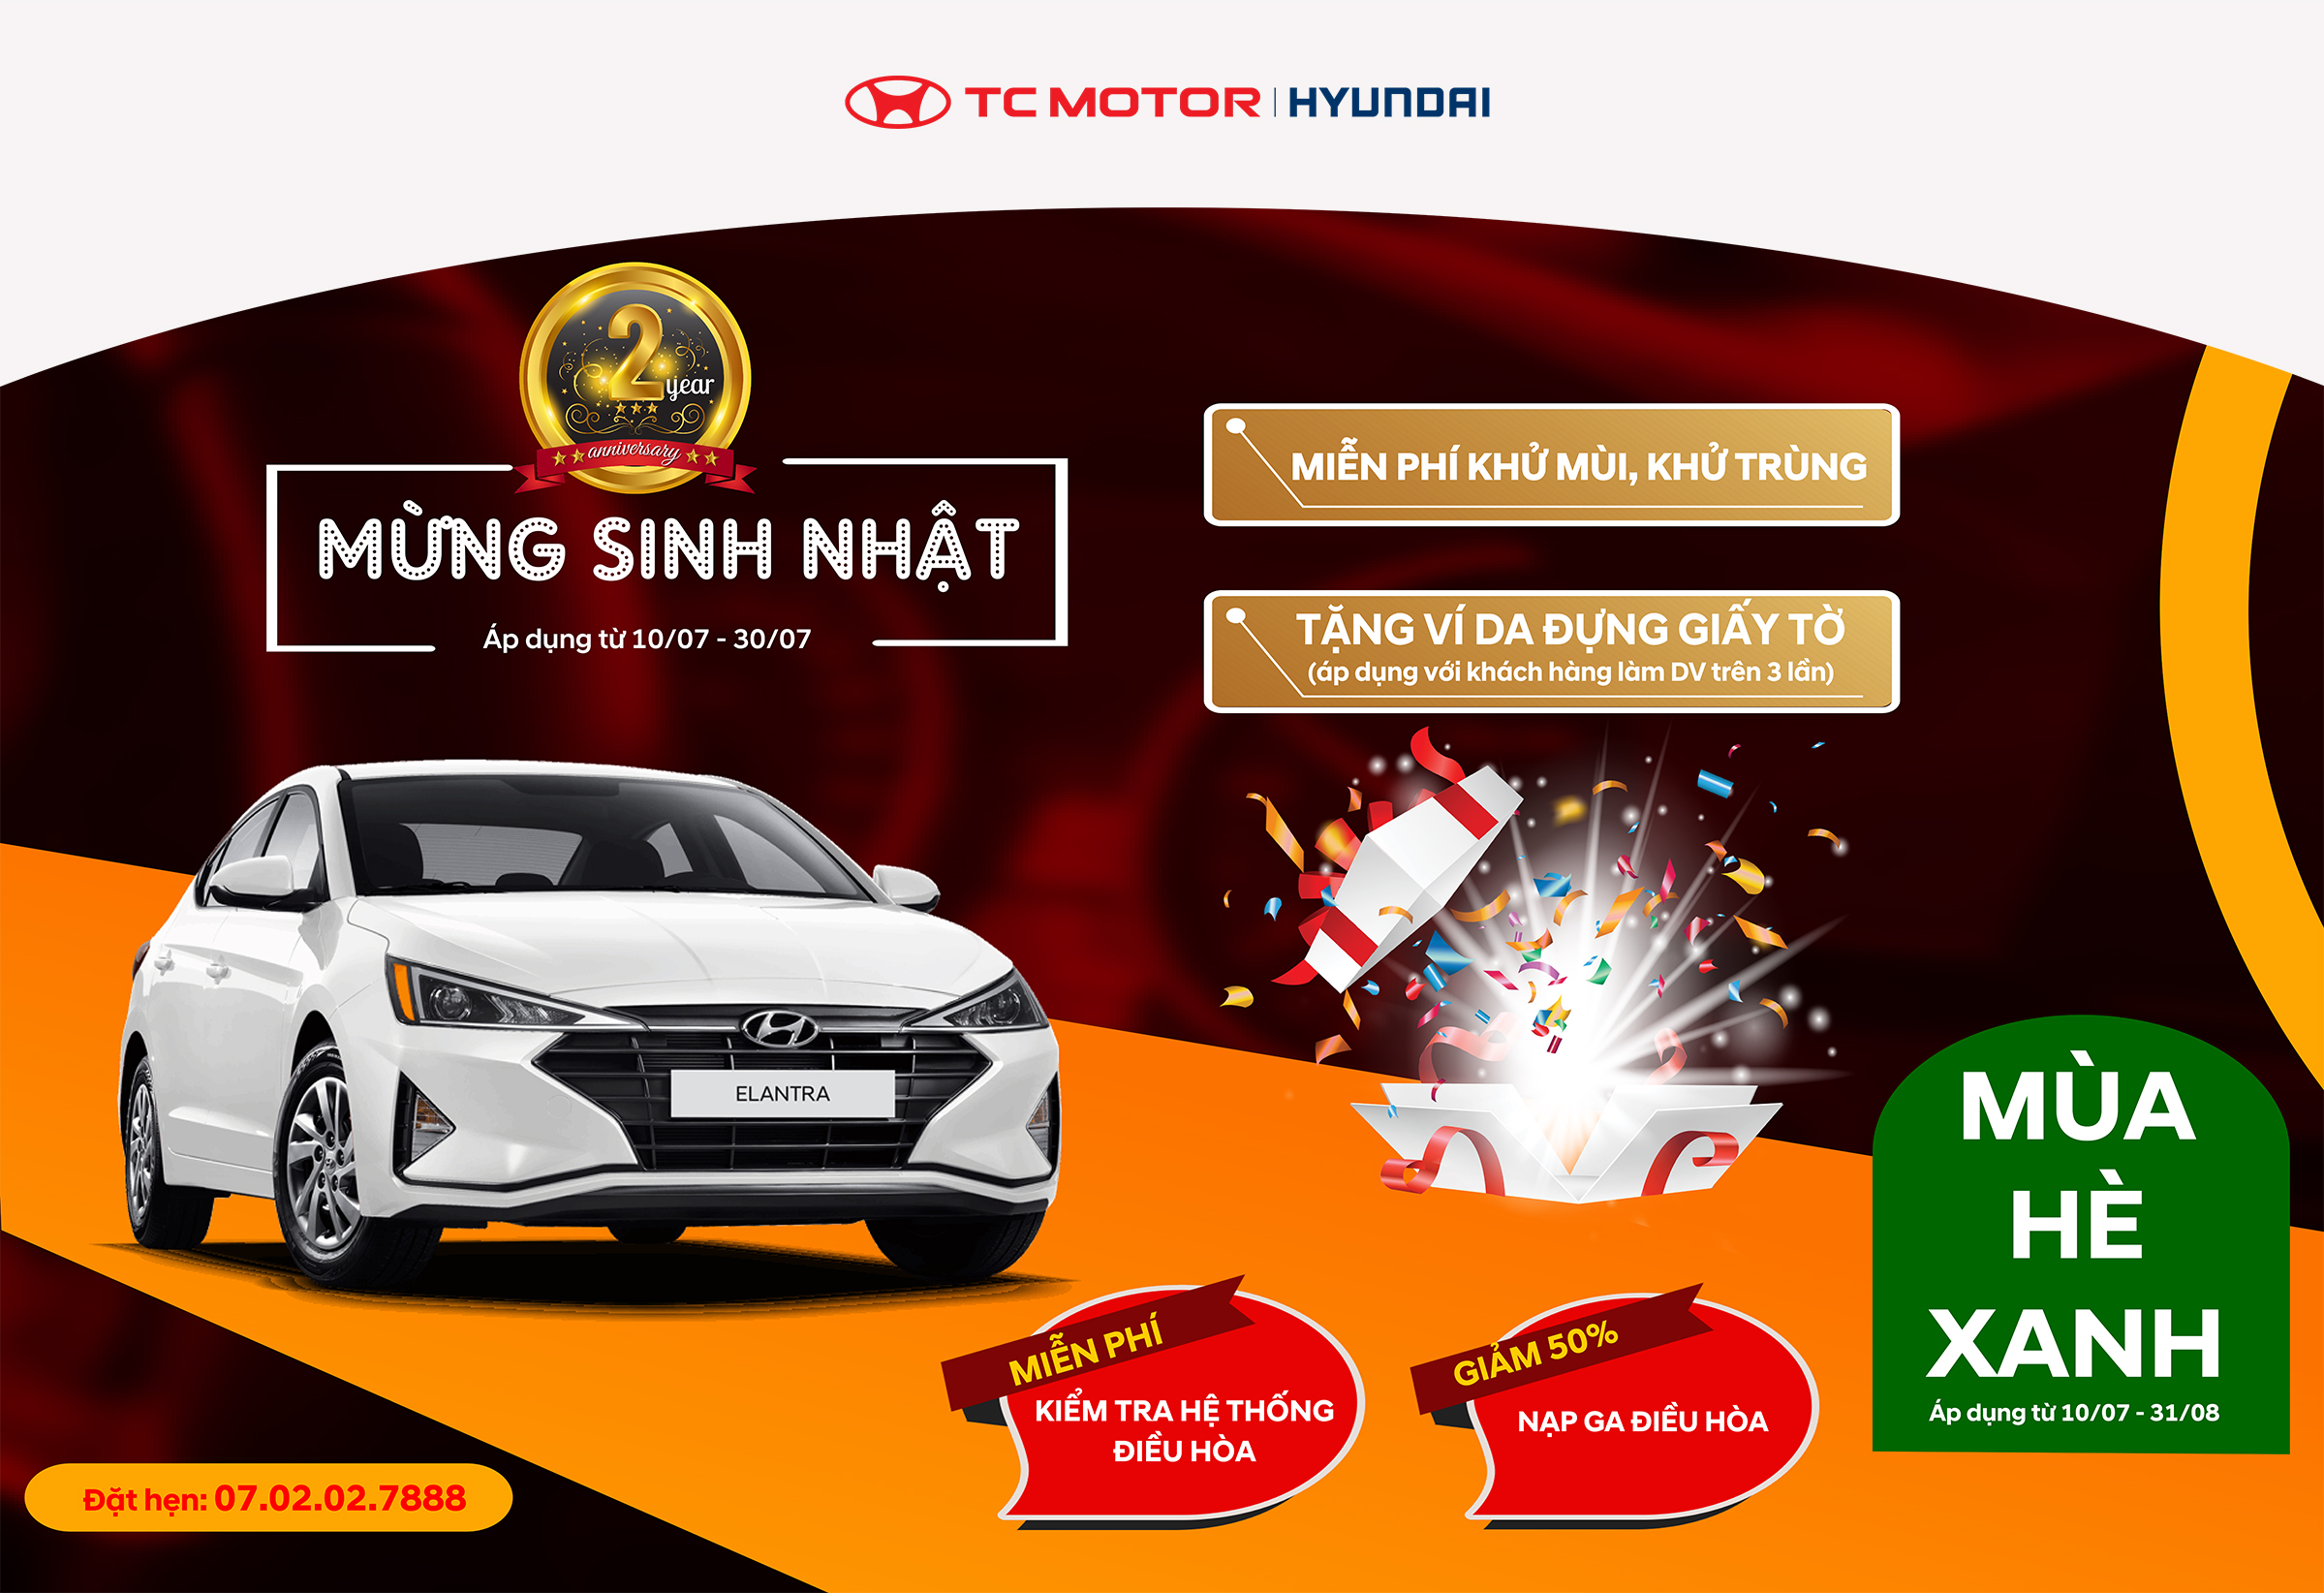 Chương trình khuyến mại dịch vụ với nhiều ưu đãi hấp dẫn dành cho khách hàng của Hyundai Nam Định